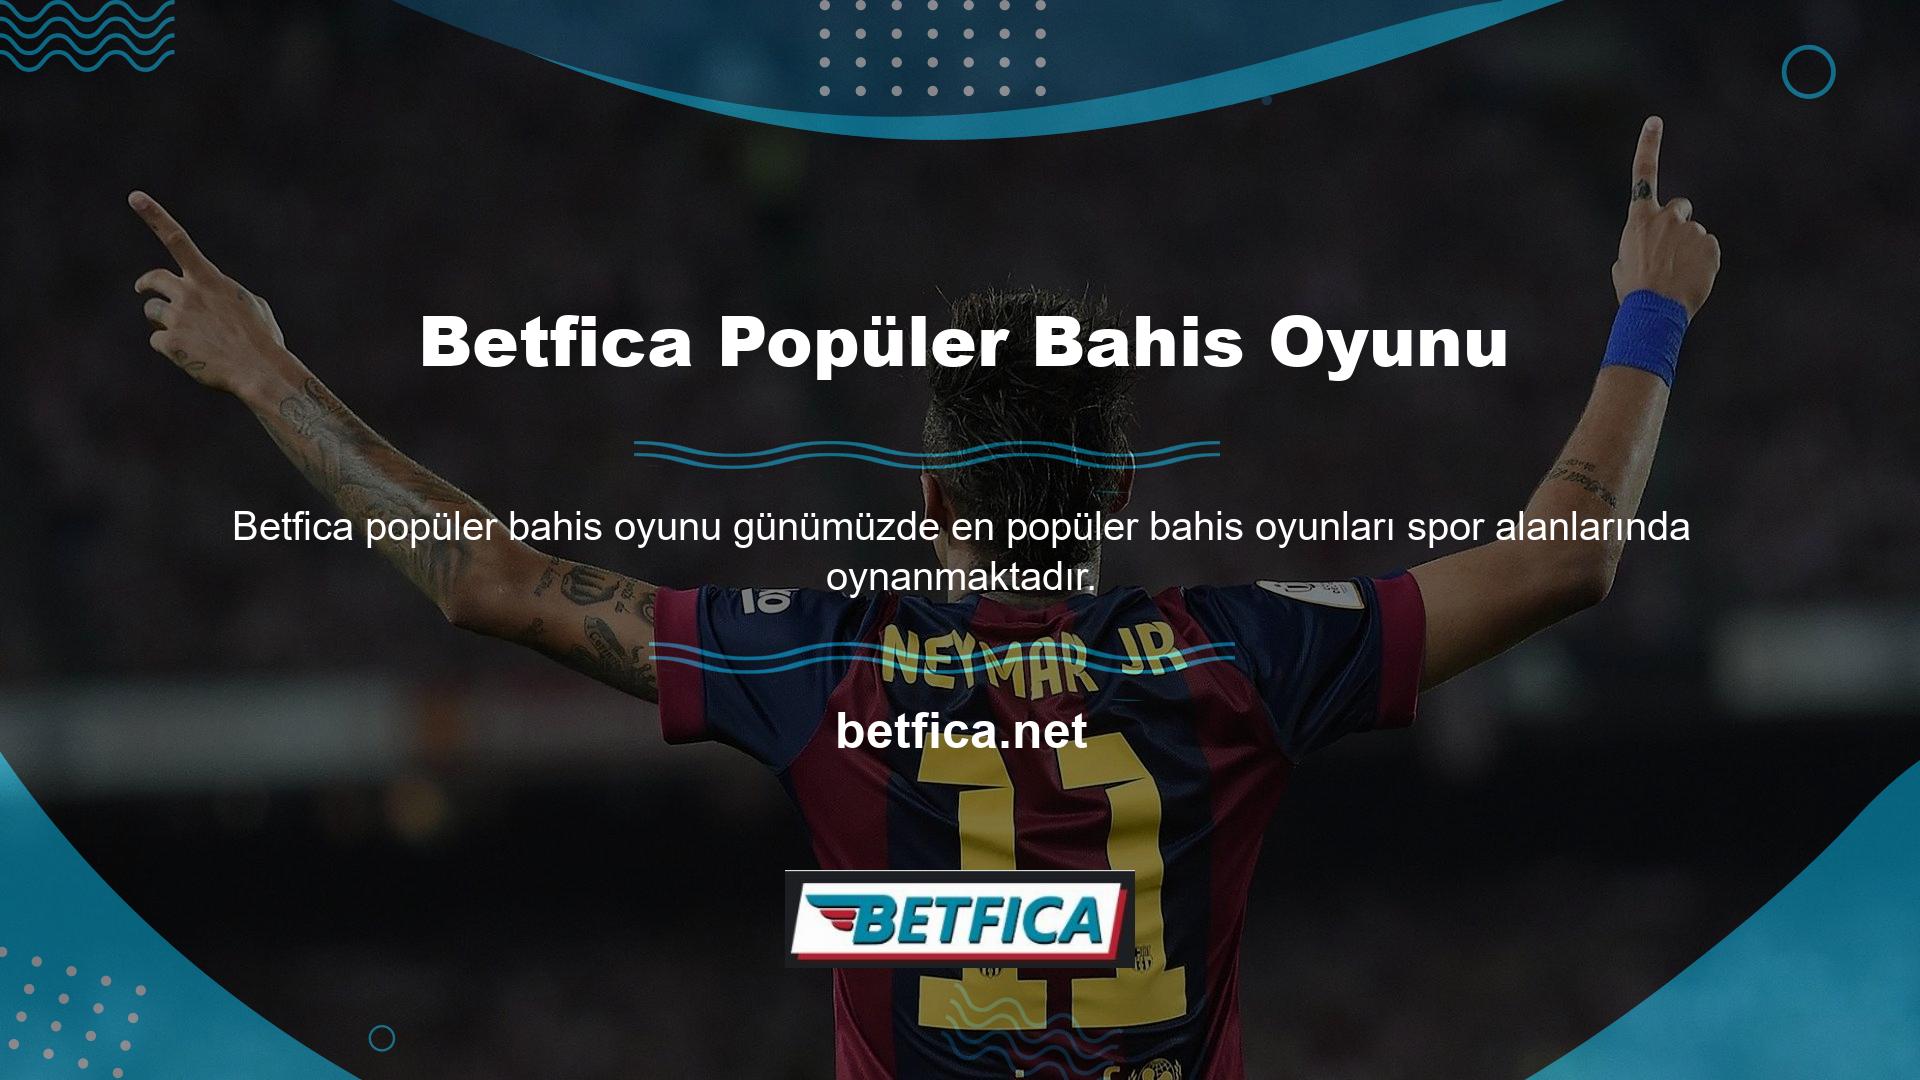 Betfica Sportsbook, üyelerine farklı spor kategorilerinde çeşitli bahis oyunları oynama fırsatı sunmaktadır